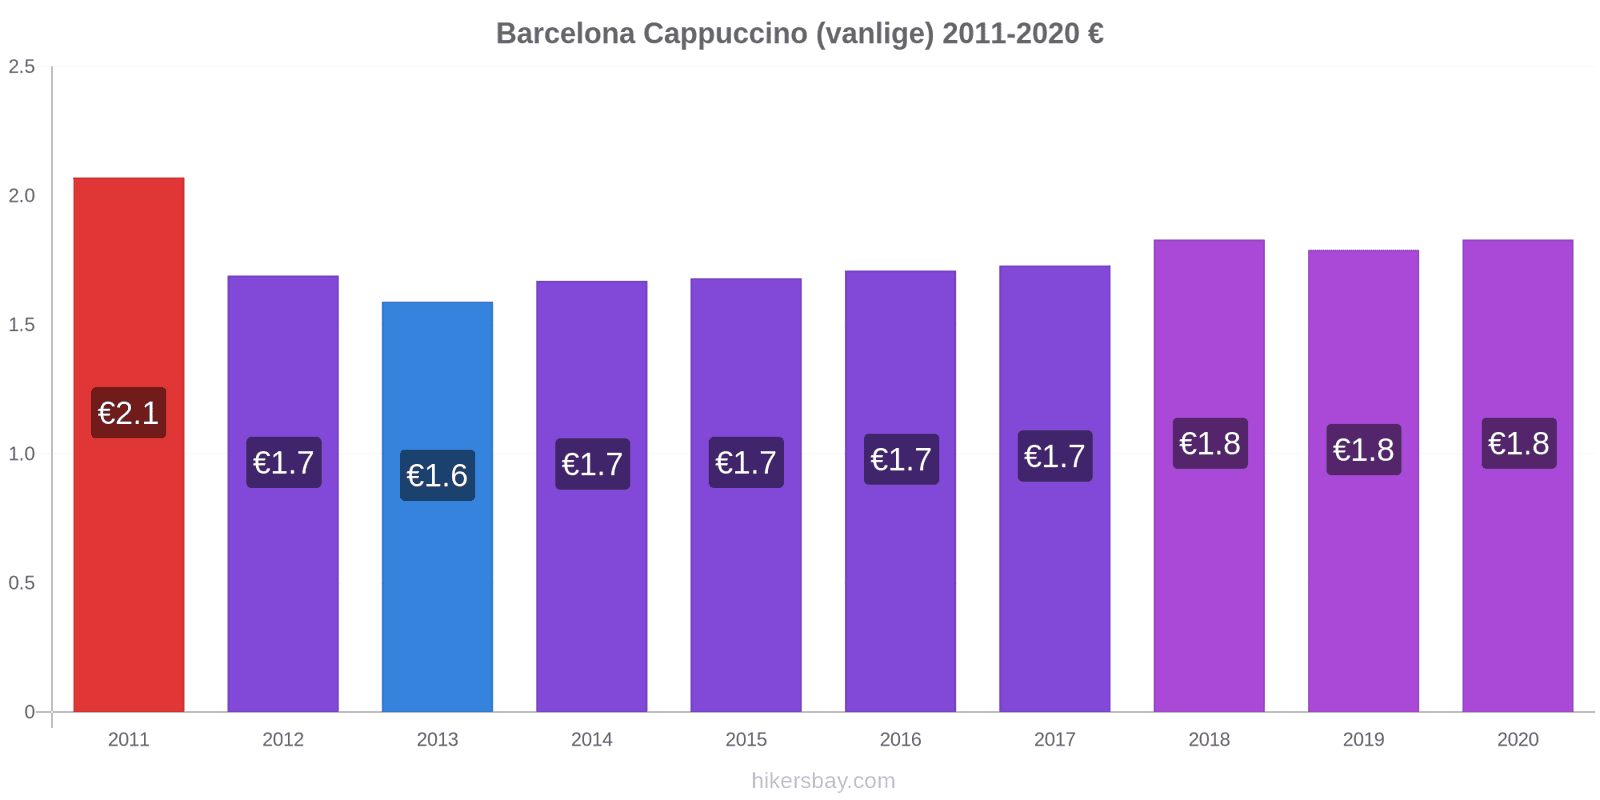 Barcelona prisendringer Cappuccino (vanlige) hikersbay.com